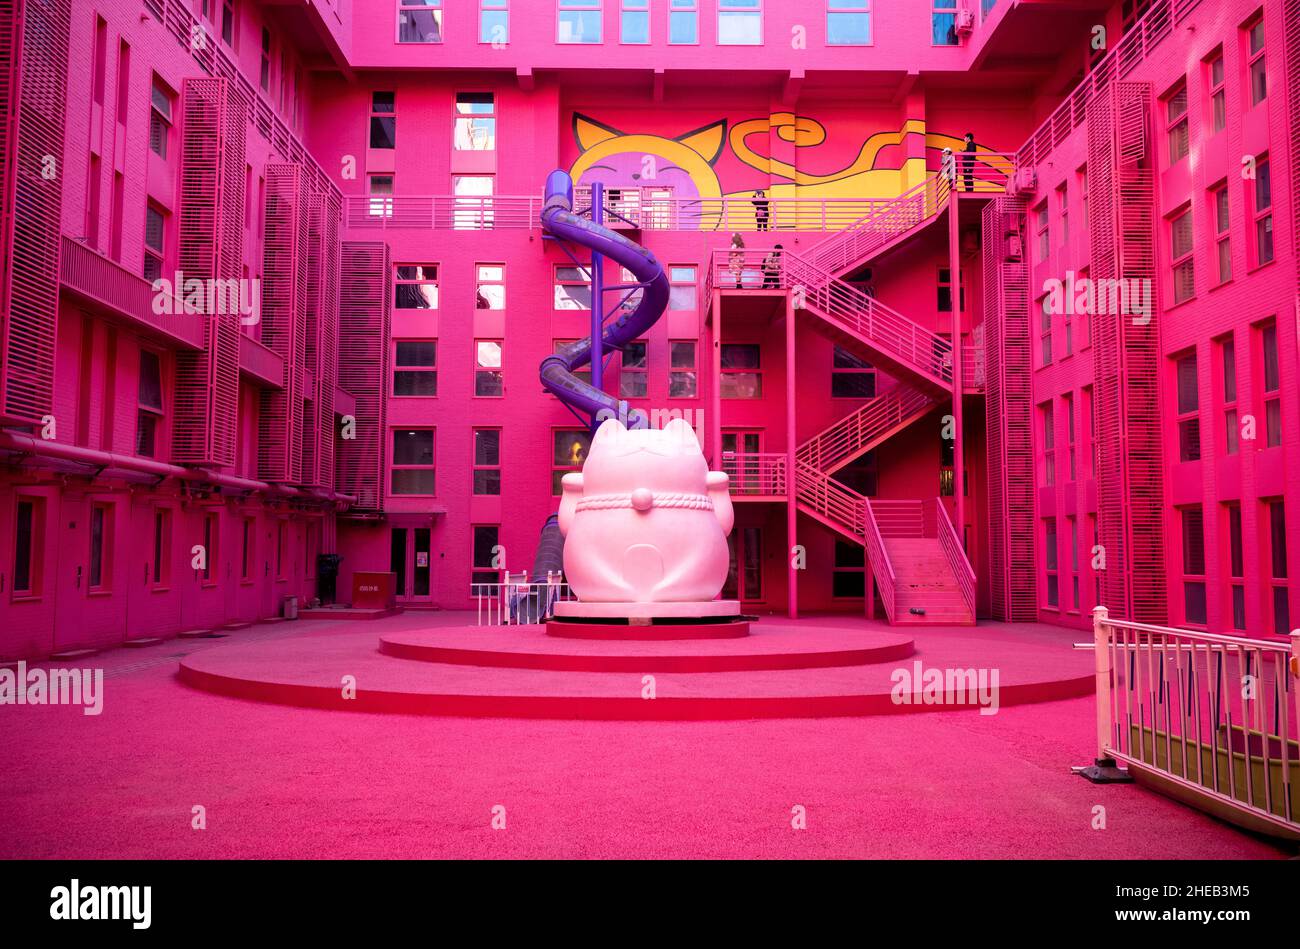 Peking, China. 10th Januar 2022. 5 Cats Mall in Peking, China am 10/01/2022 wurde der Veranstaltungsort ganz rosa gestrichen, eine Attraktion für chinesische Influencer. Von Wiktor Dabkowski Quelle: dpa/Alamy Live News Stockfoto